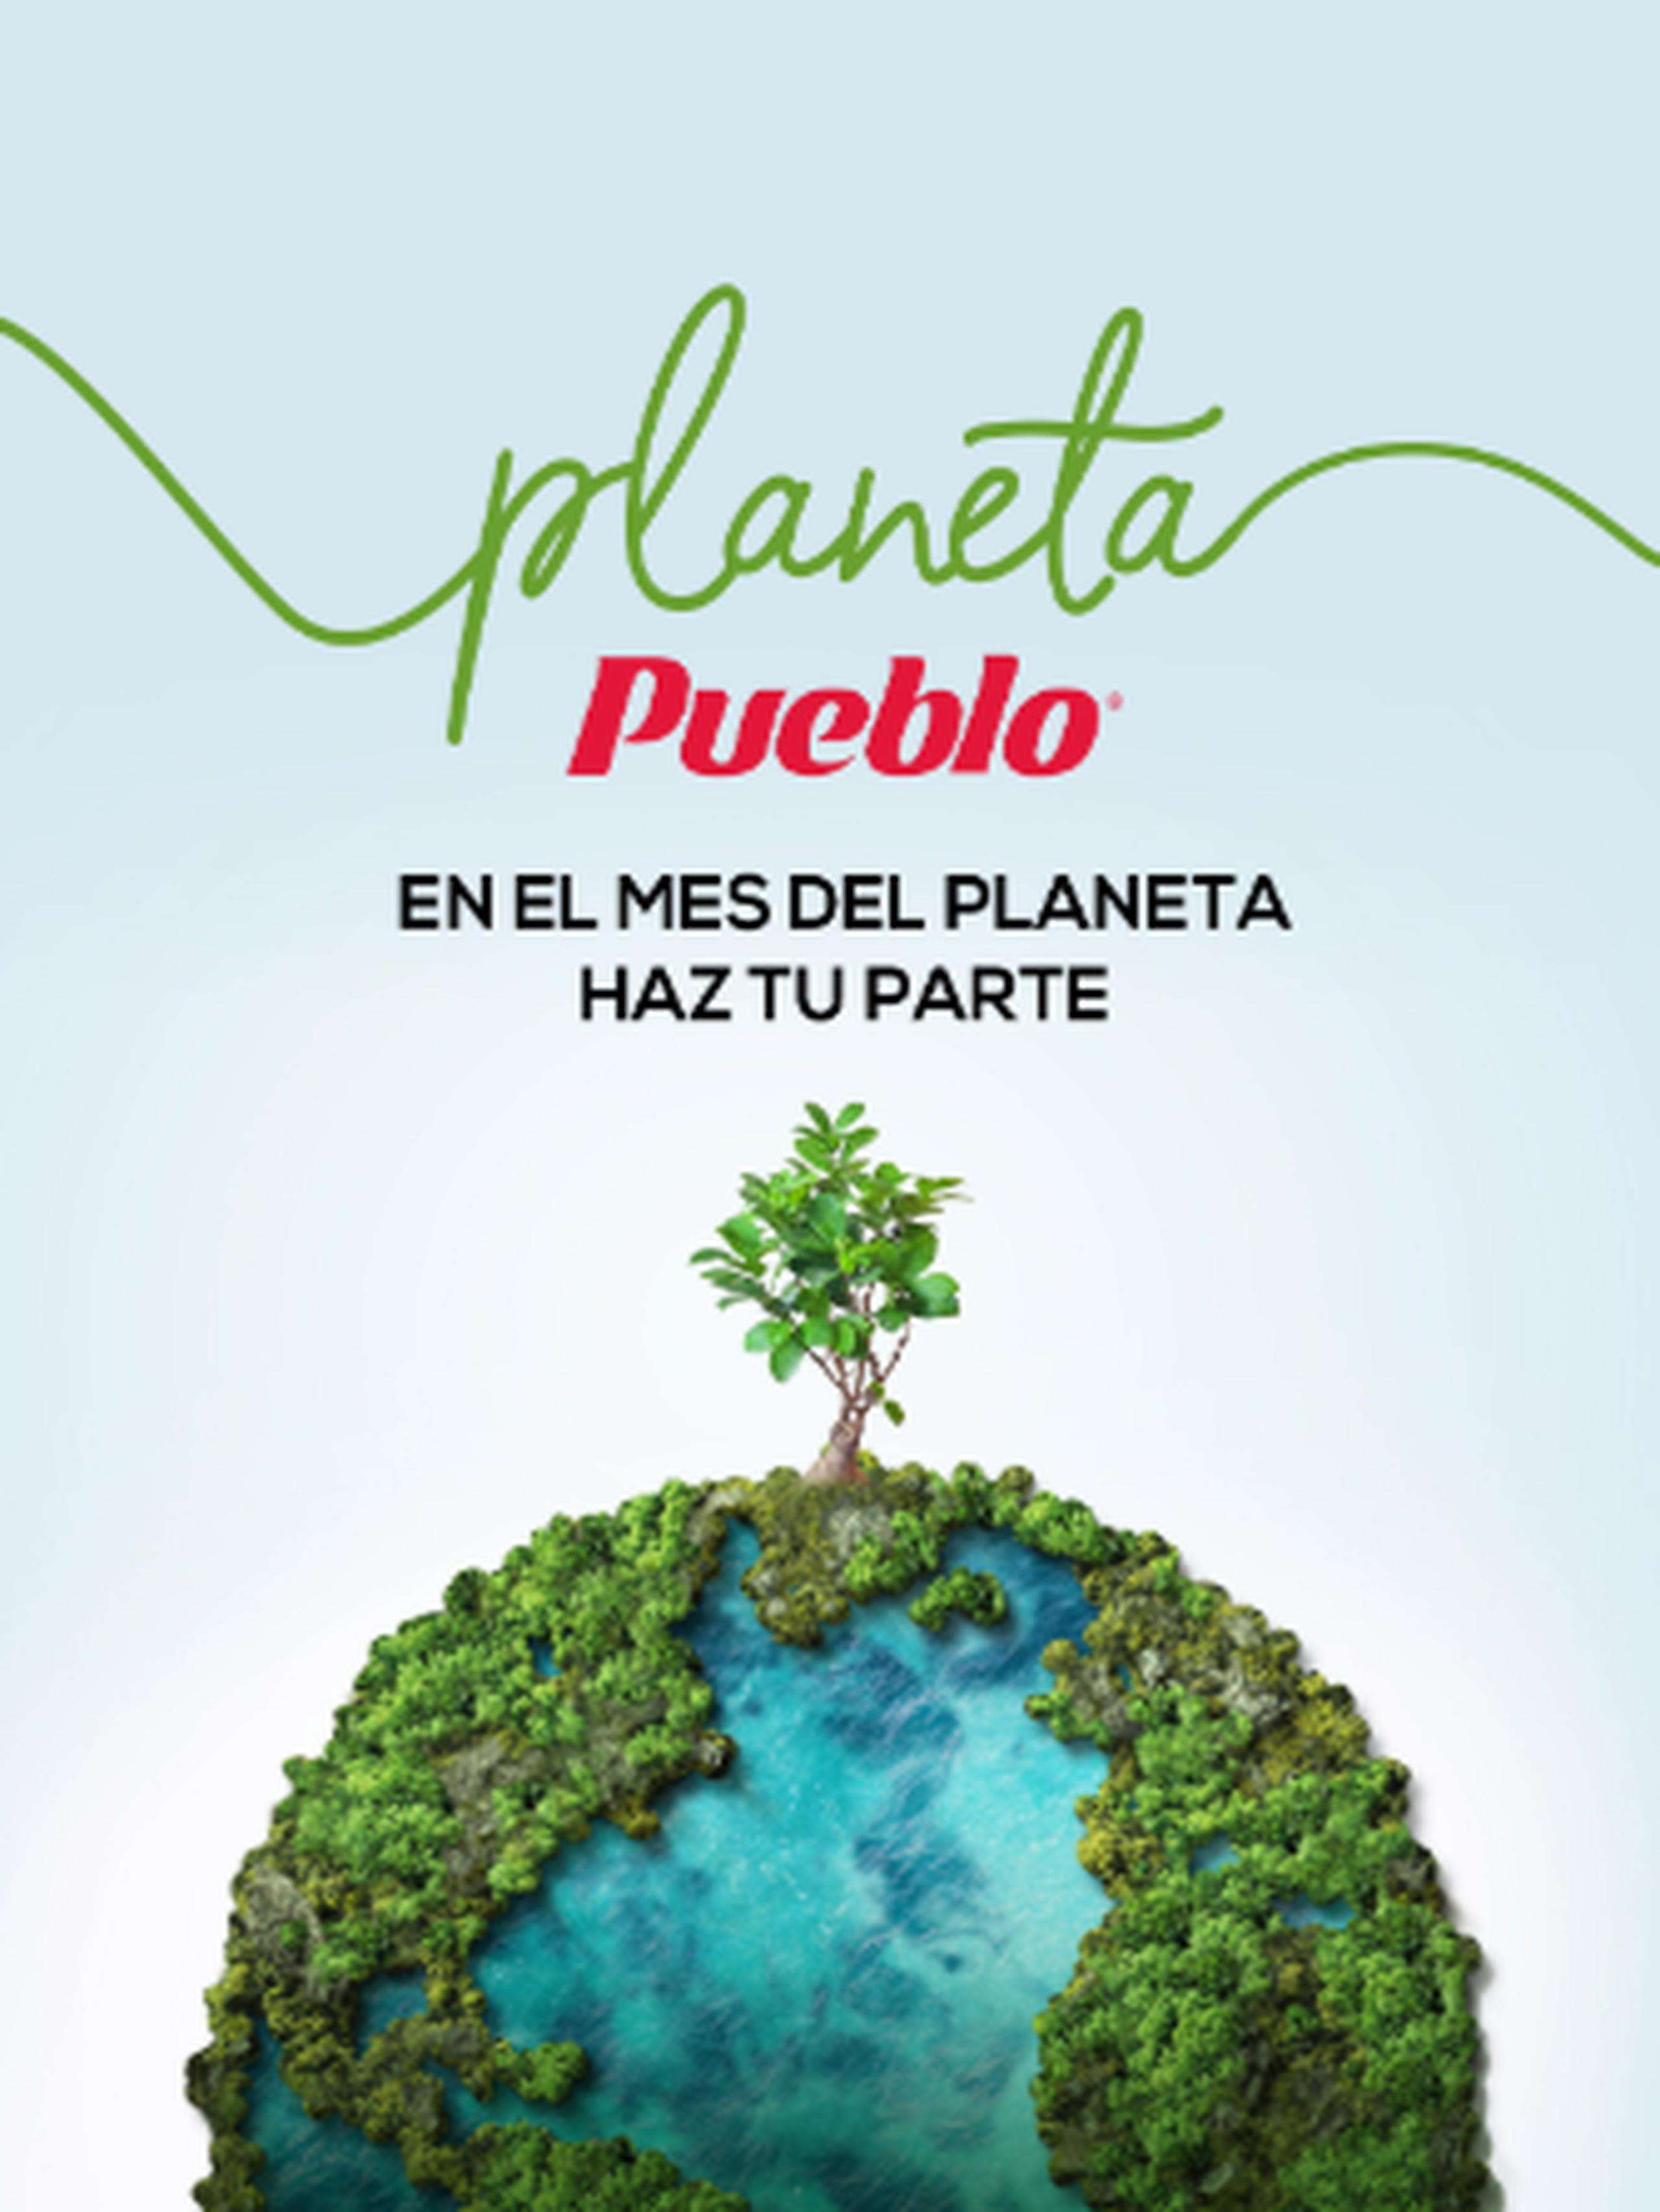 Accede a www.puebloweb.com/revista y encuentra información de cómo ayudar al planeta.